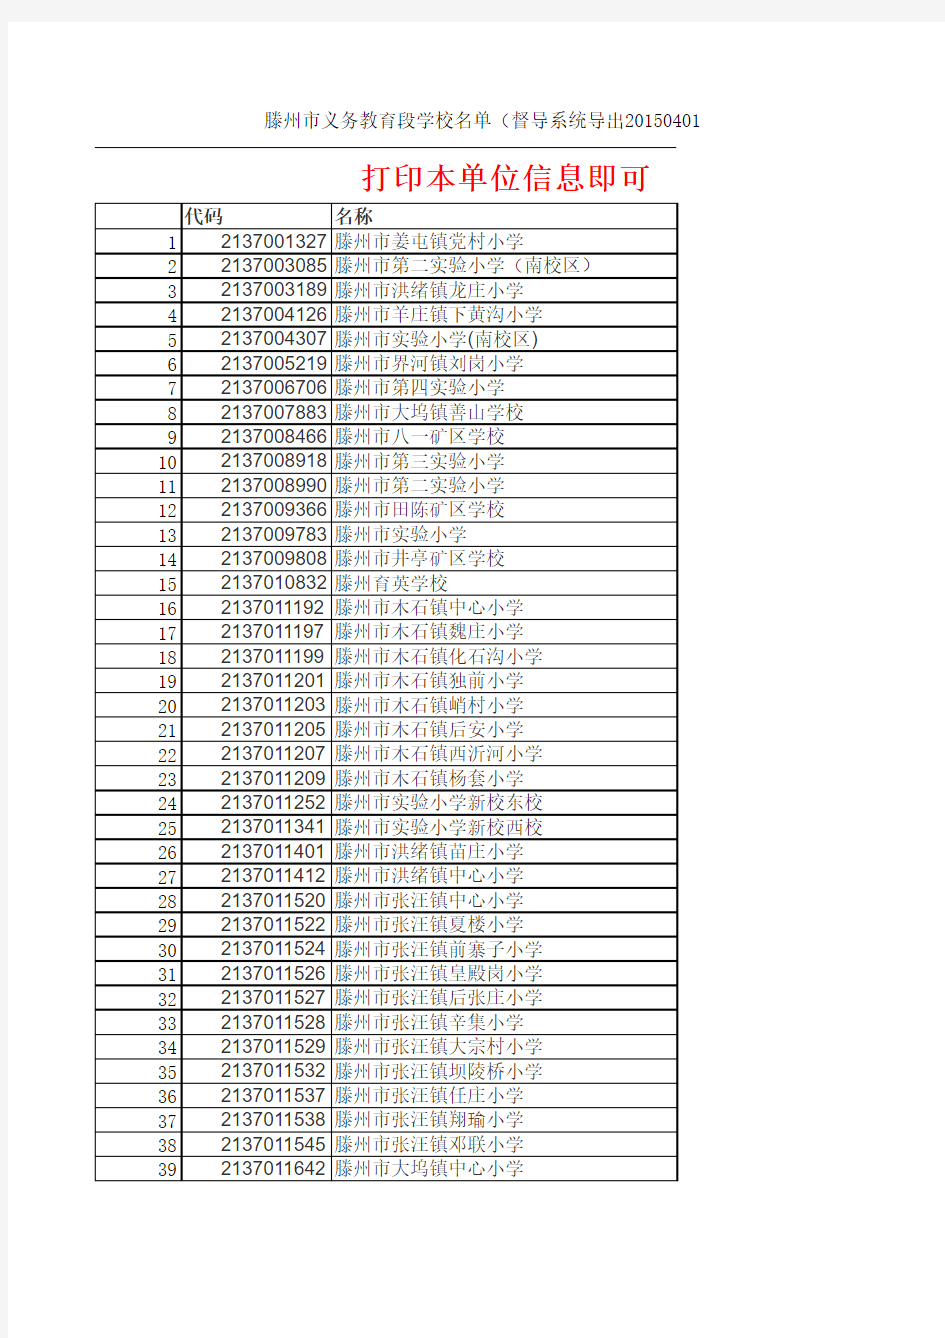 滕州市义务教育段学校名单(督导系统导出20150401)